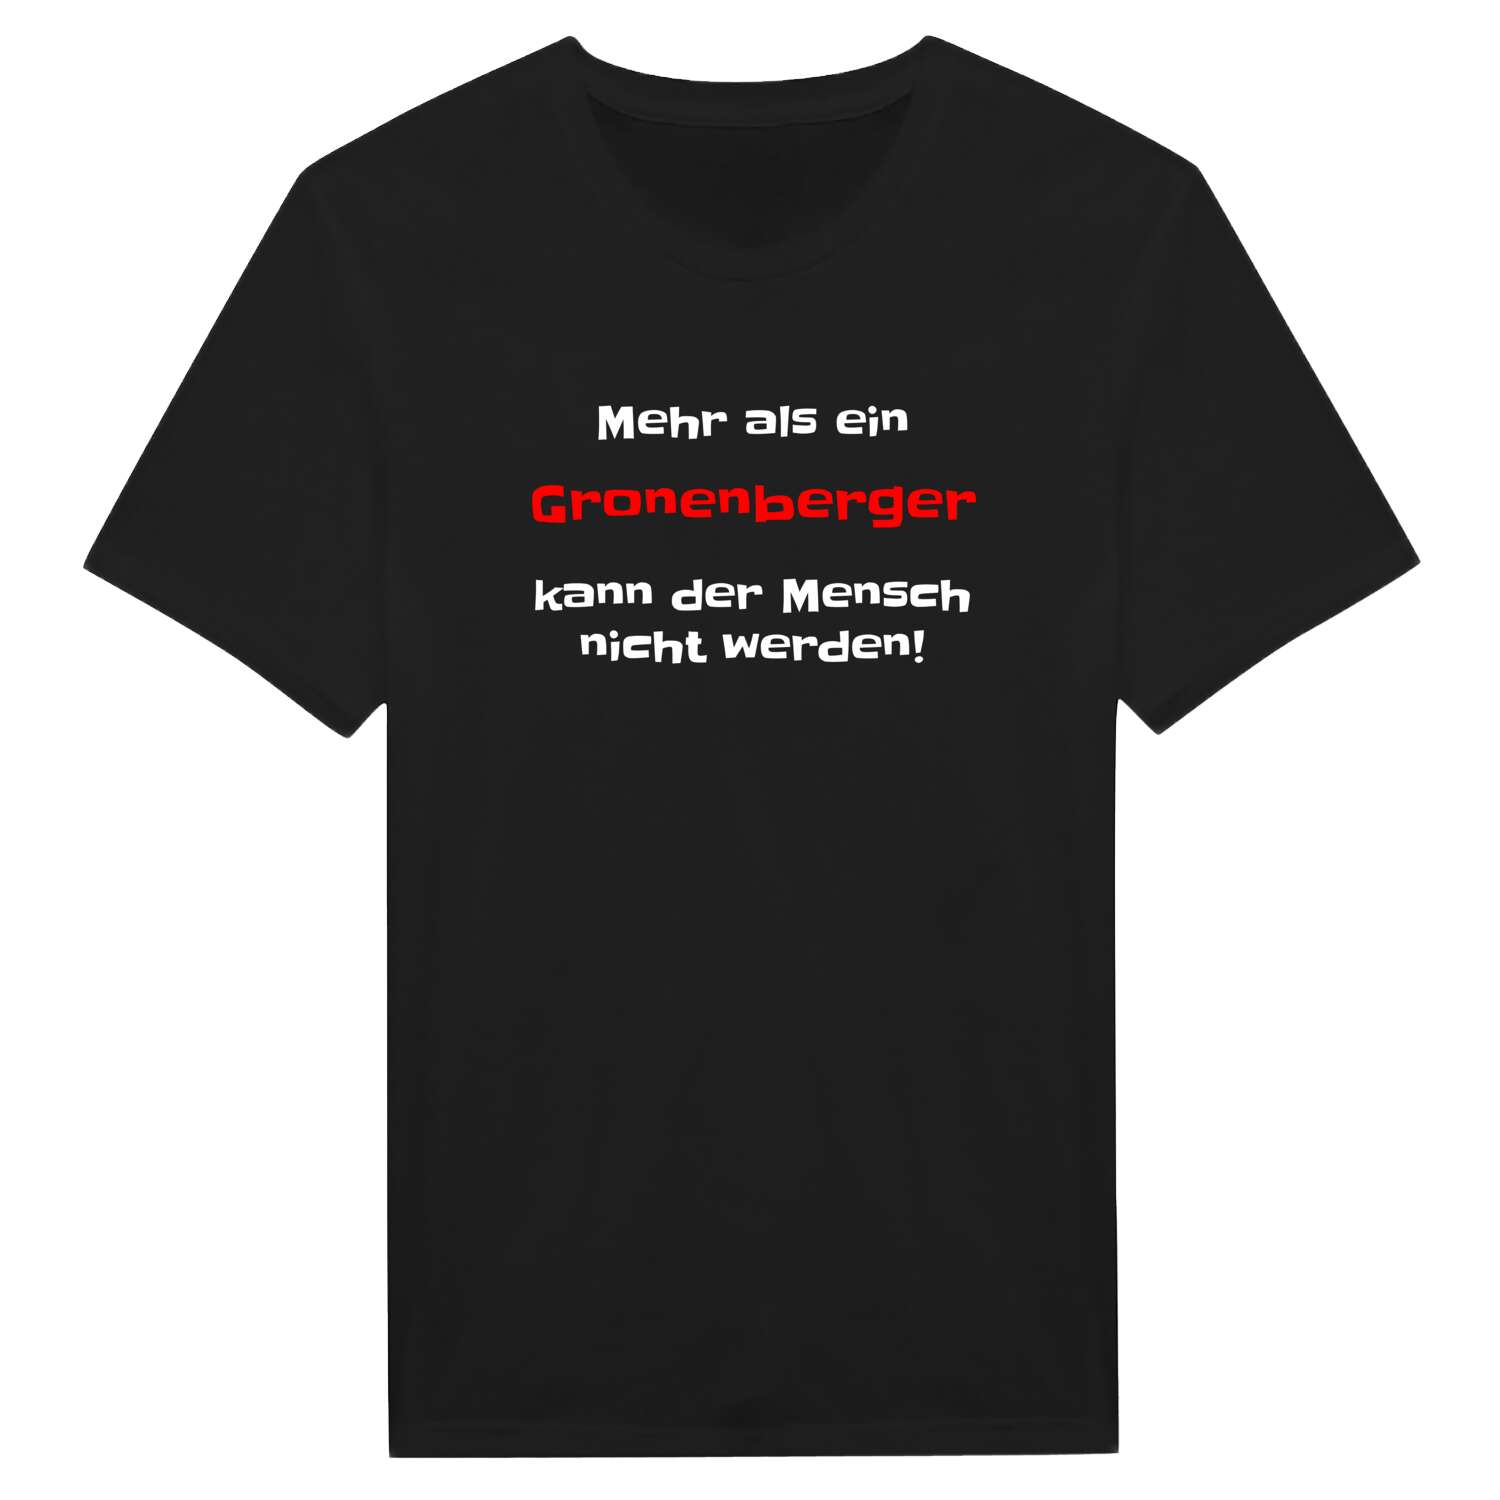 Gronenberg T-Shirt »Mehr als ein«